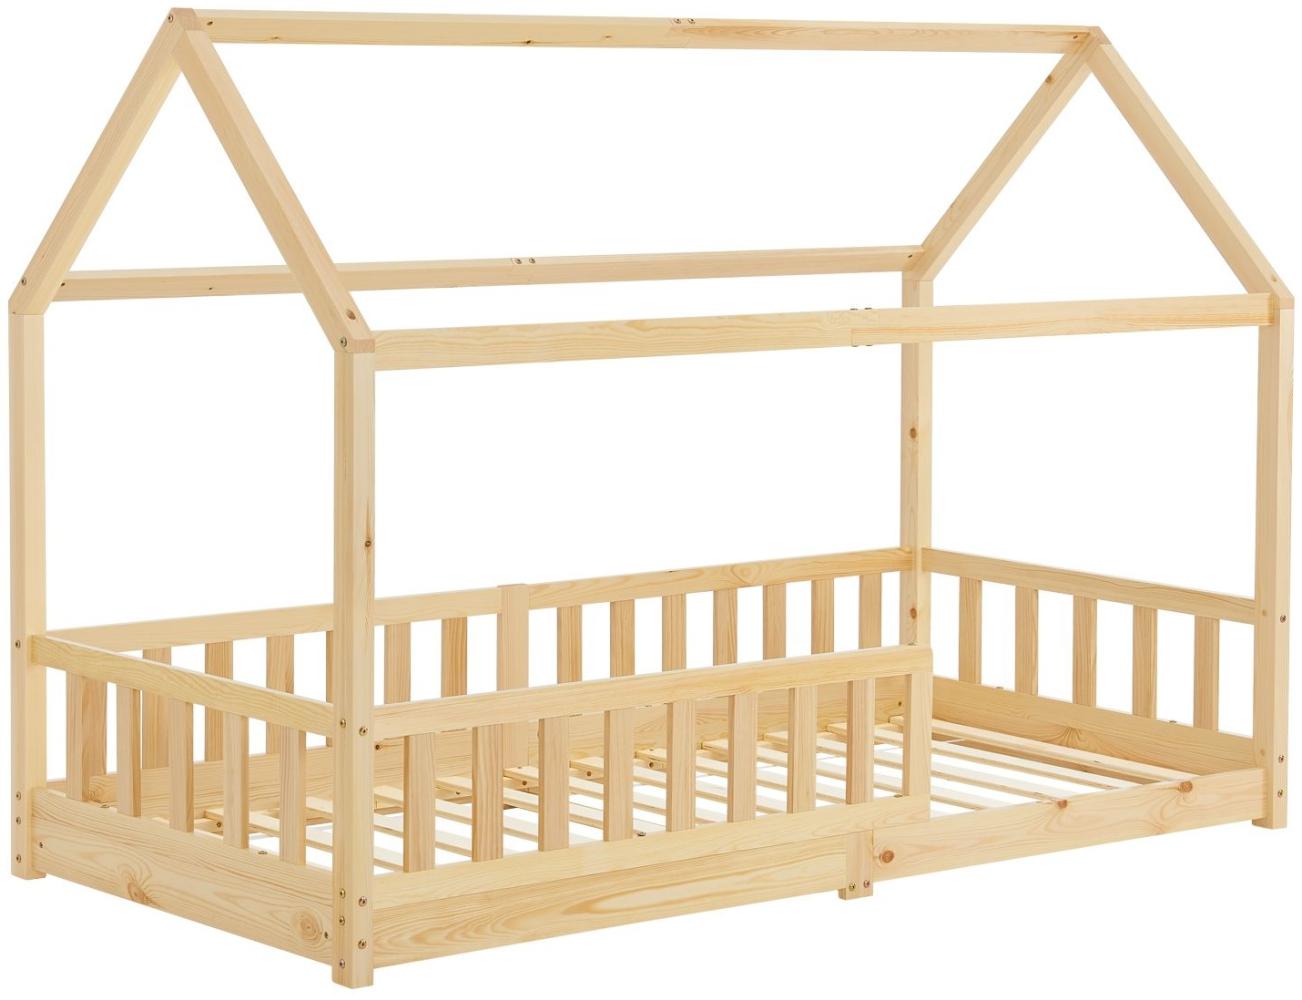 Juskys Kinderbett Marli 90 x 200 cm mit Rausfallschutz, Lattenrost und Dach - Massivholz Hausbett für Kinder - Bett in Natur Bild 1